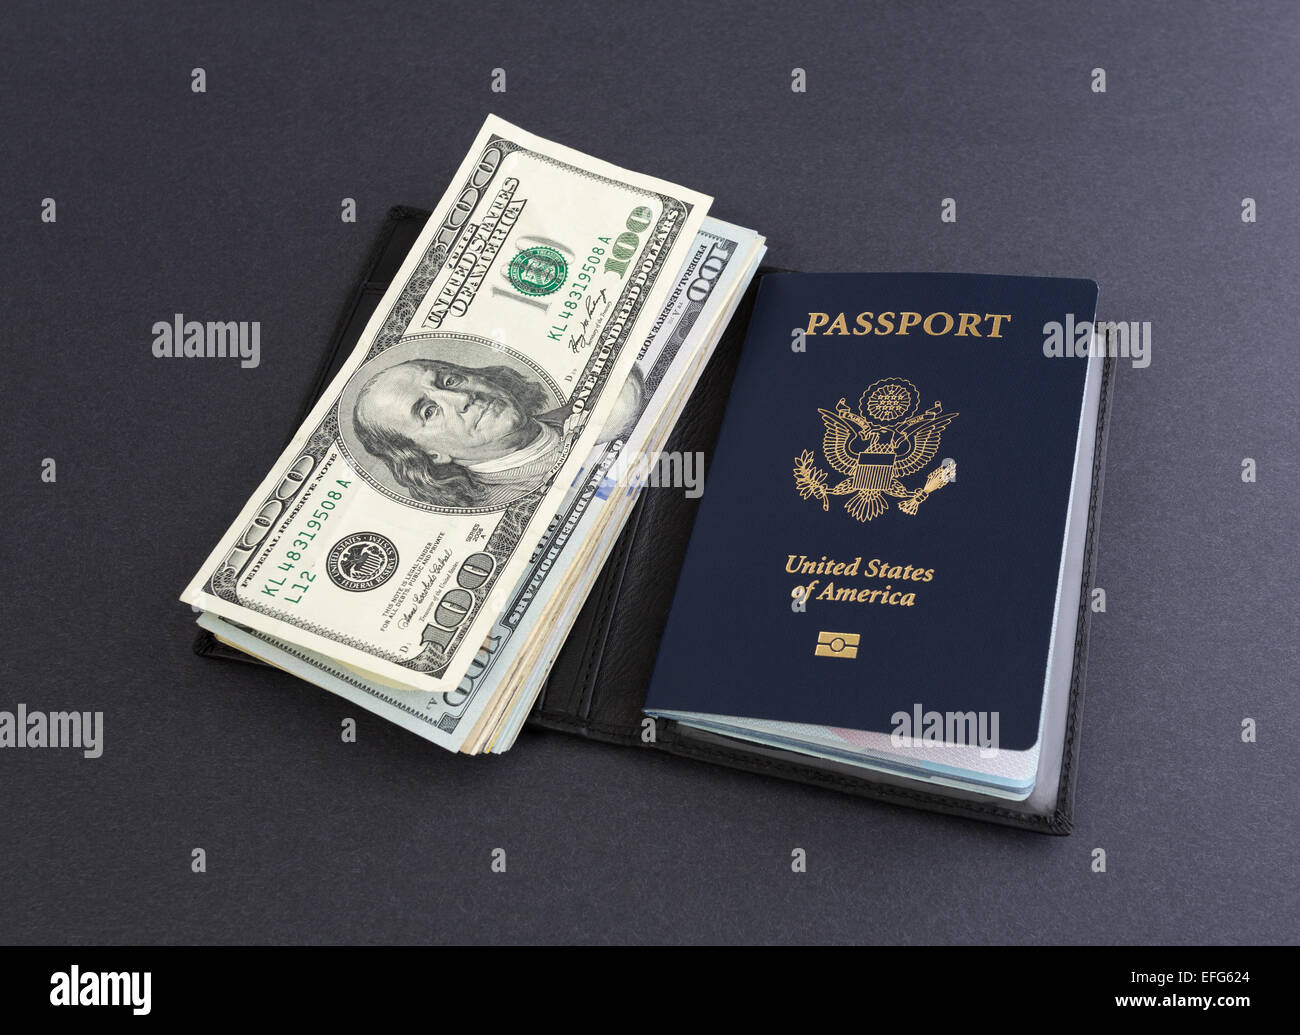 Gli Stati Uniti d'America il passaporto in un supporto in pelle con diverse centinaia di fatture del dollaro sulla cima di uno sfondo scuro. Foto Stock